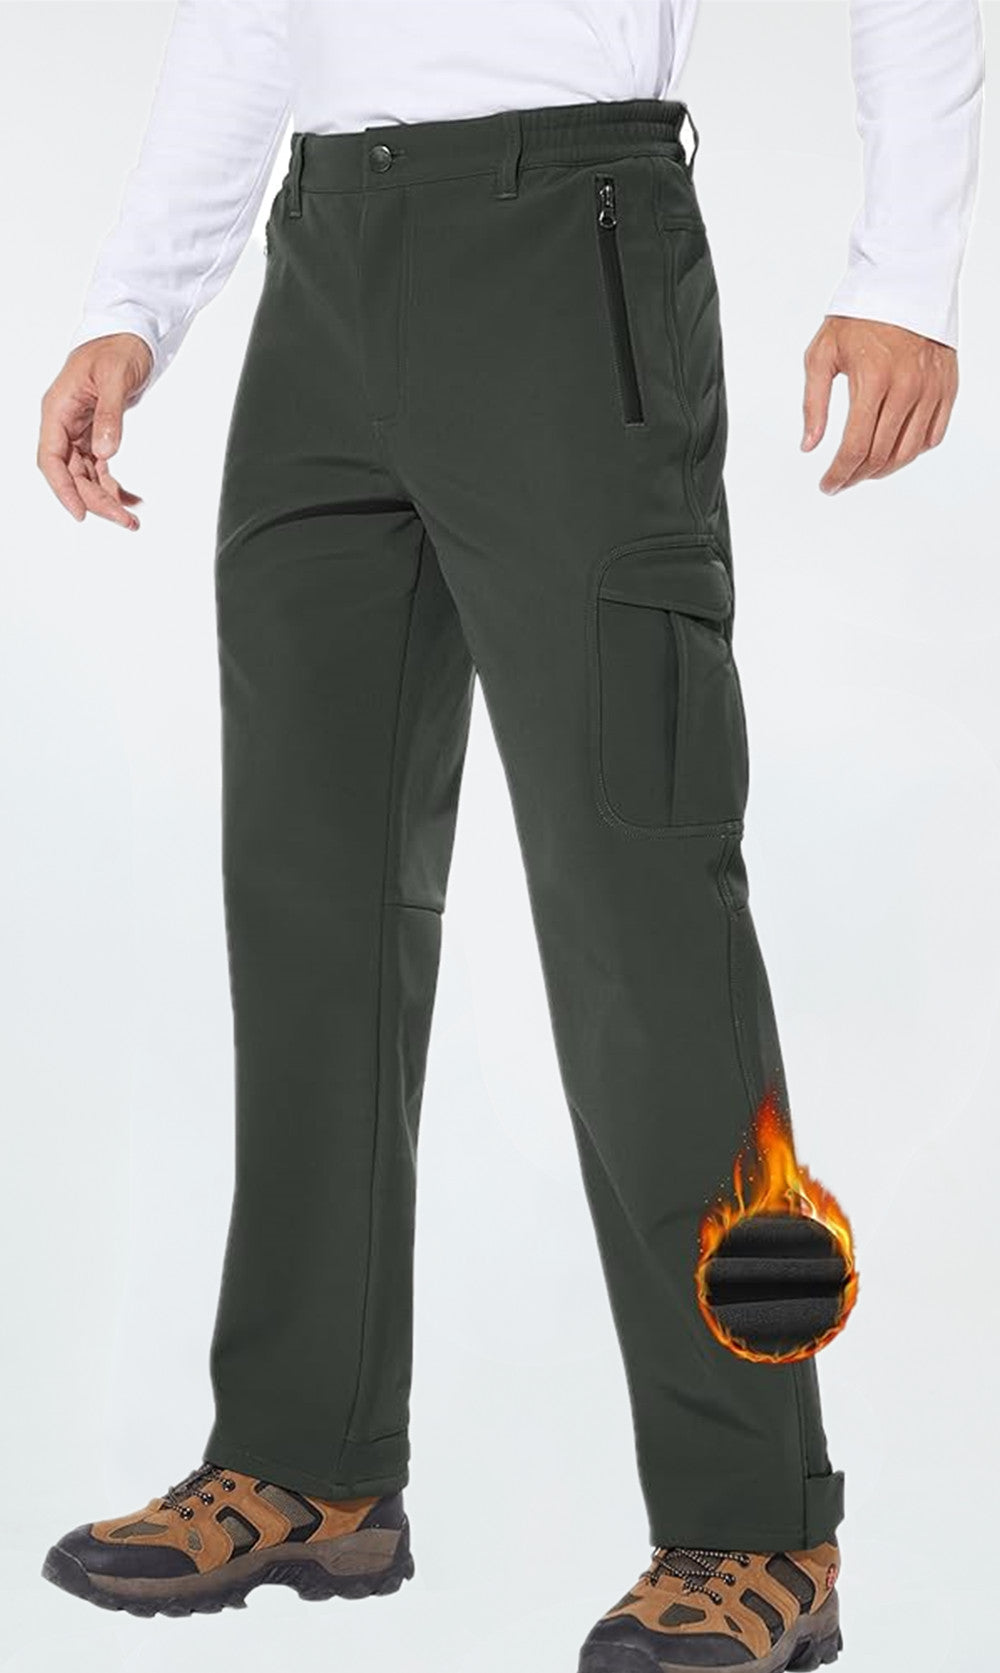 Buy Men's Hiking Pants Fleece Removable Waterproof Windproof